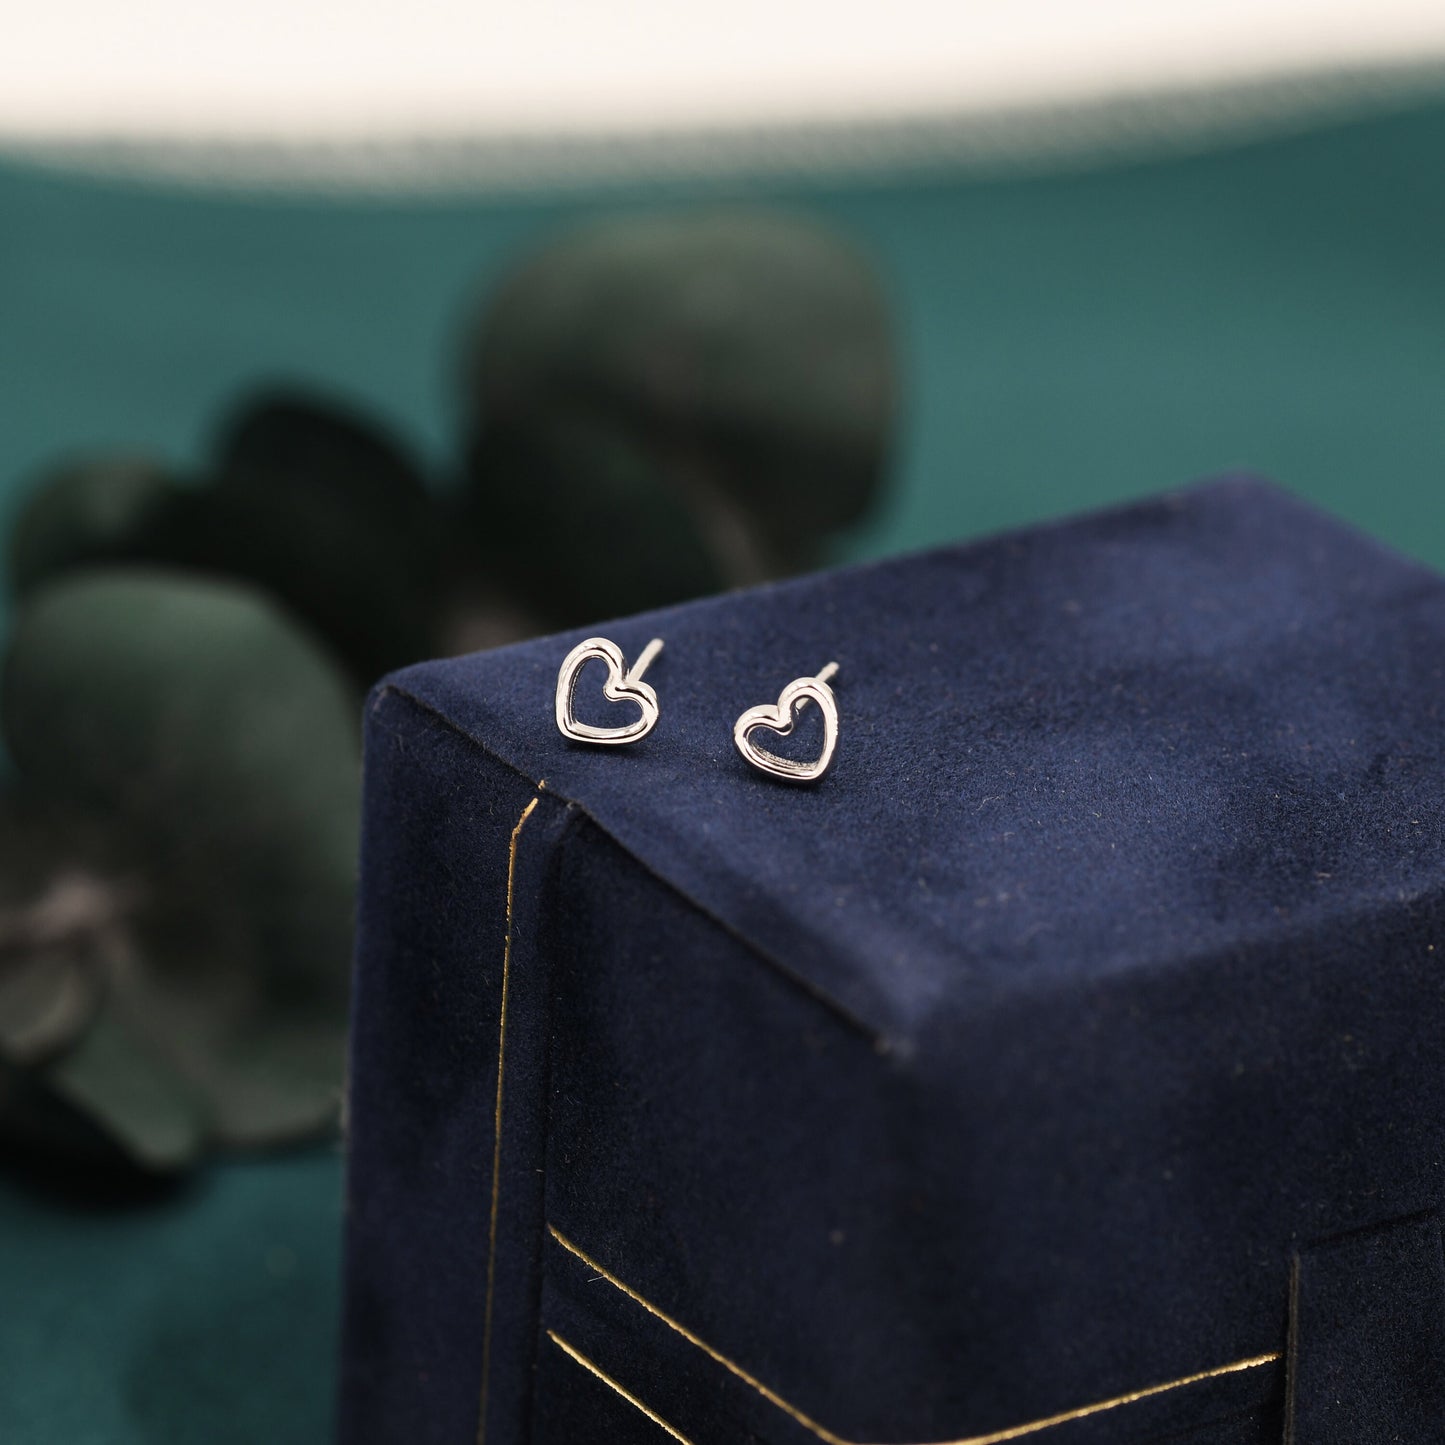 Sterling Silver Little Open Heart Stud Earrings, Cute, Fun, Minimalist, Simple and Elegant Jewellery